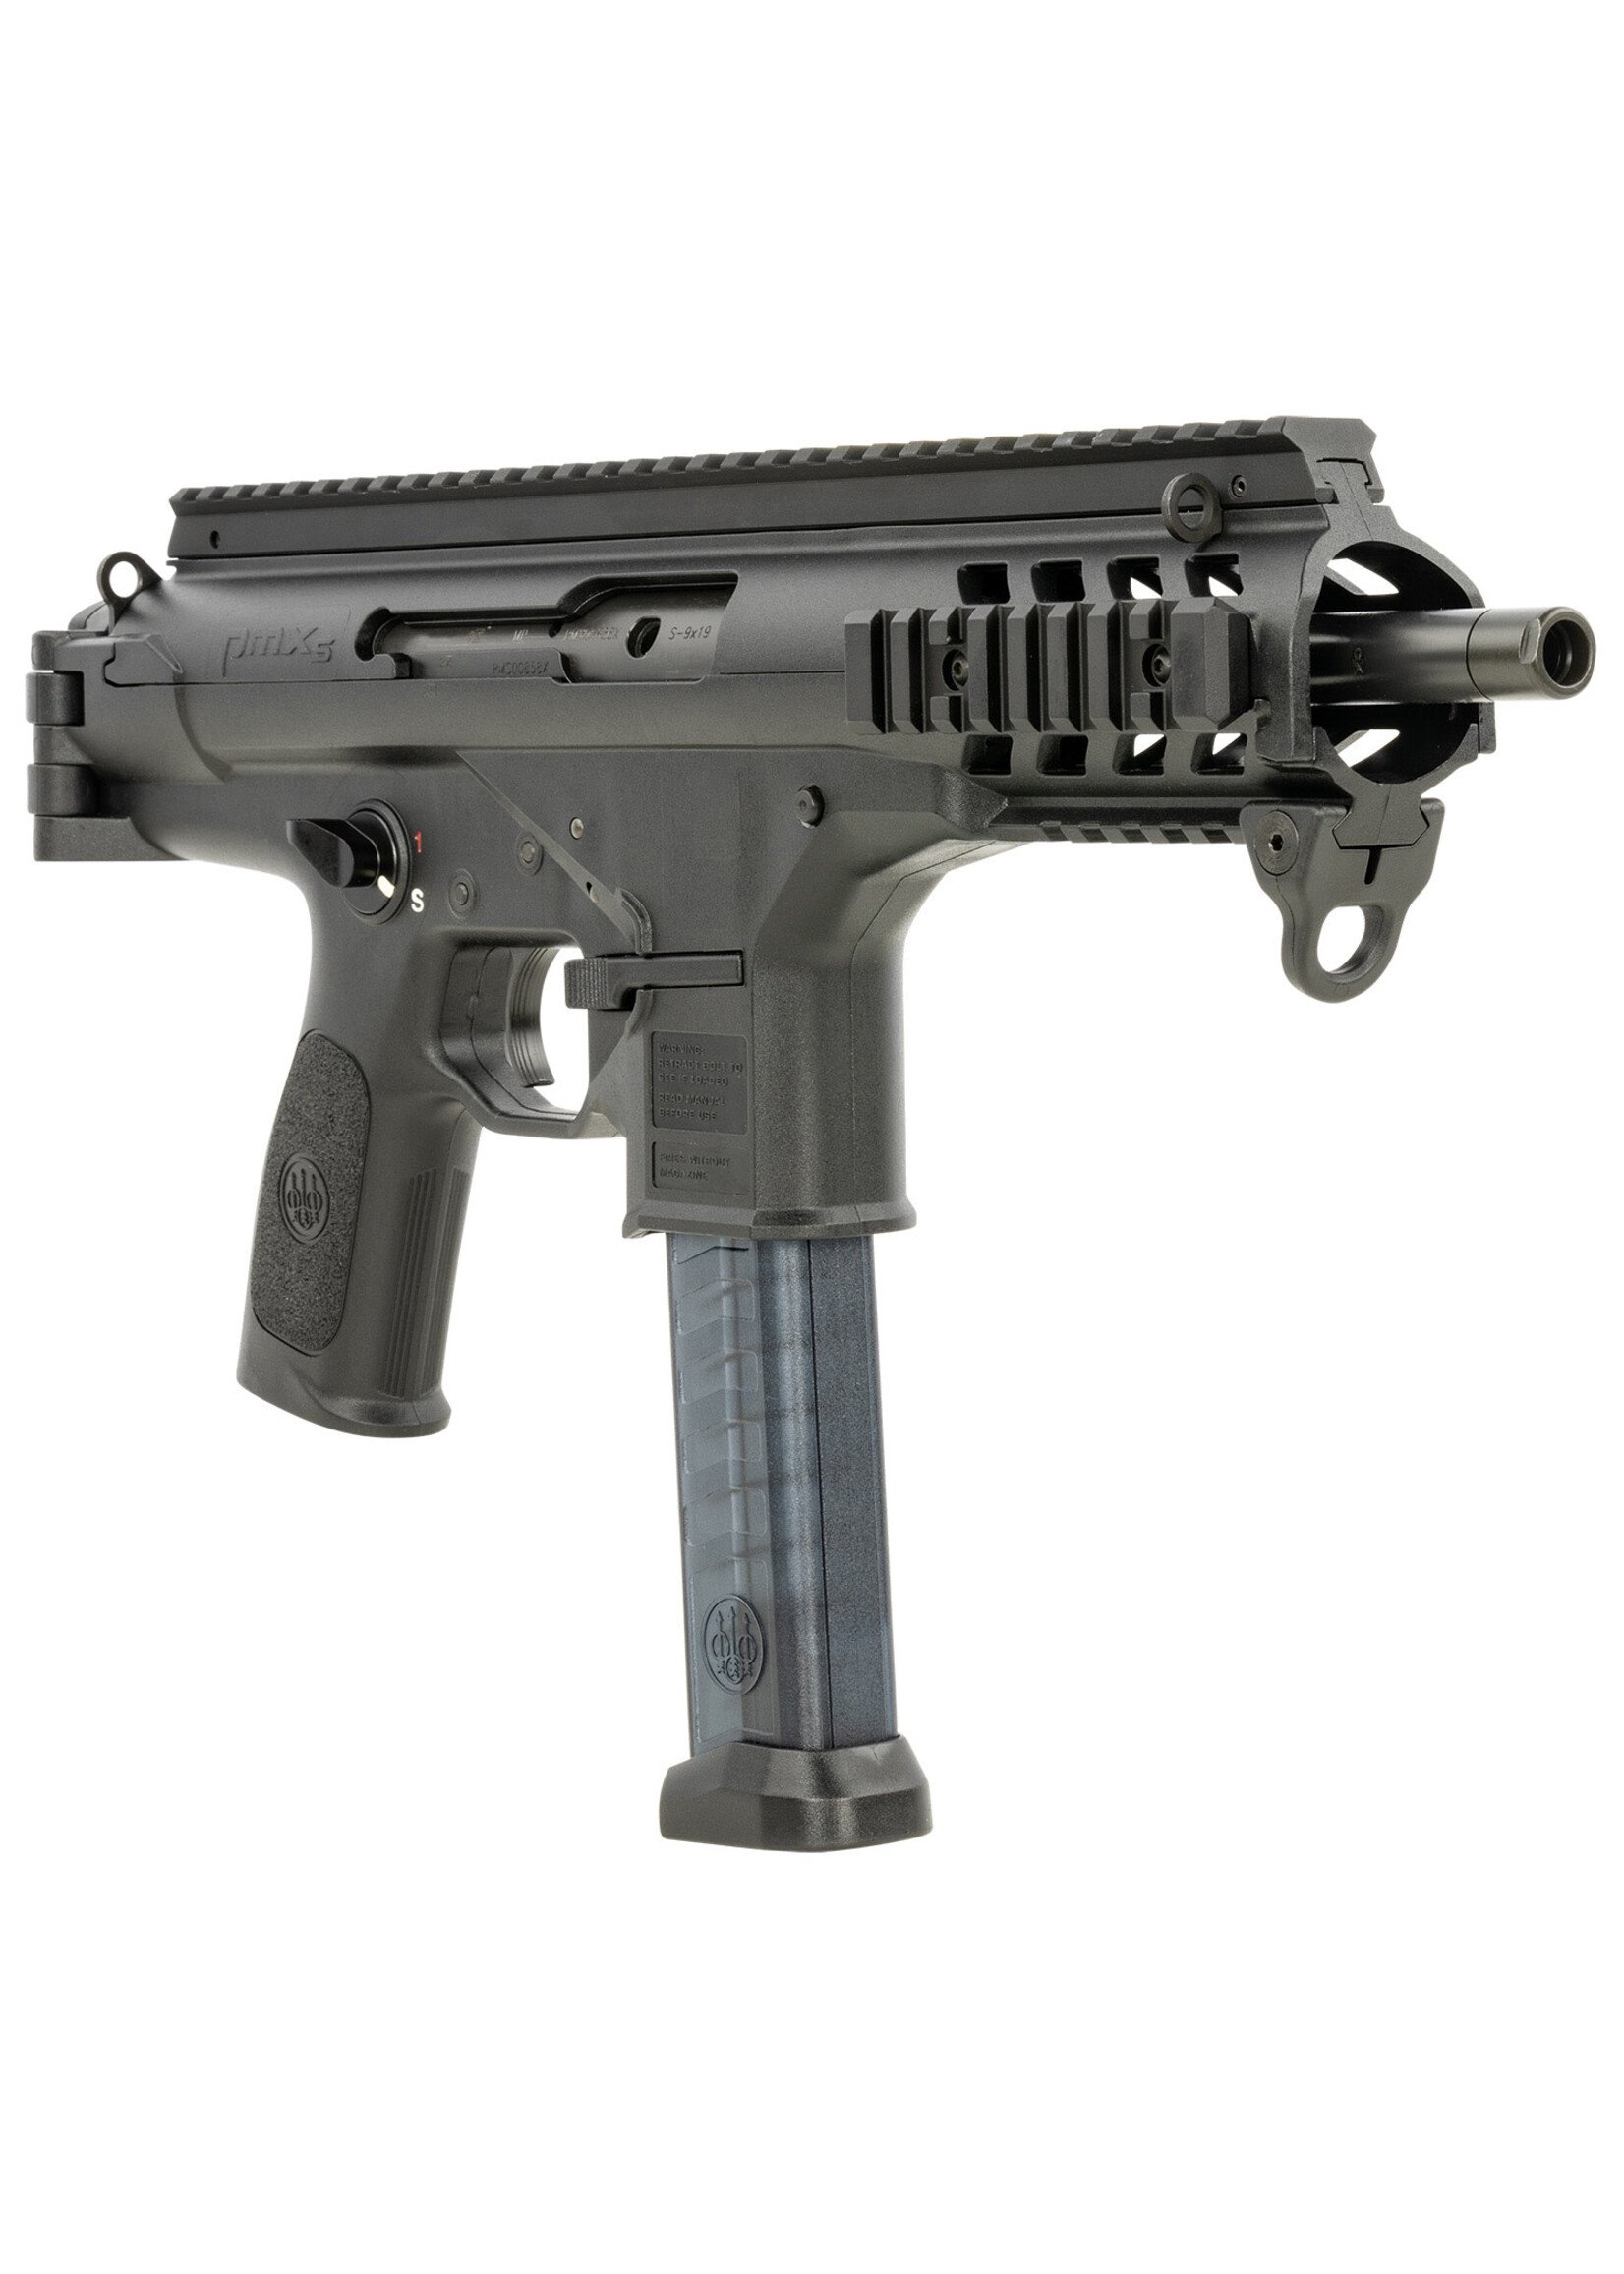 Beretta Beretta USA JPMXSBLK30 PMXs 9mm Luger 30+1 (2) 6.90" Threaded Barrel, Black, QD End Plate, Picatinny Handgaurd, Ambi Controls